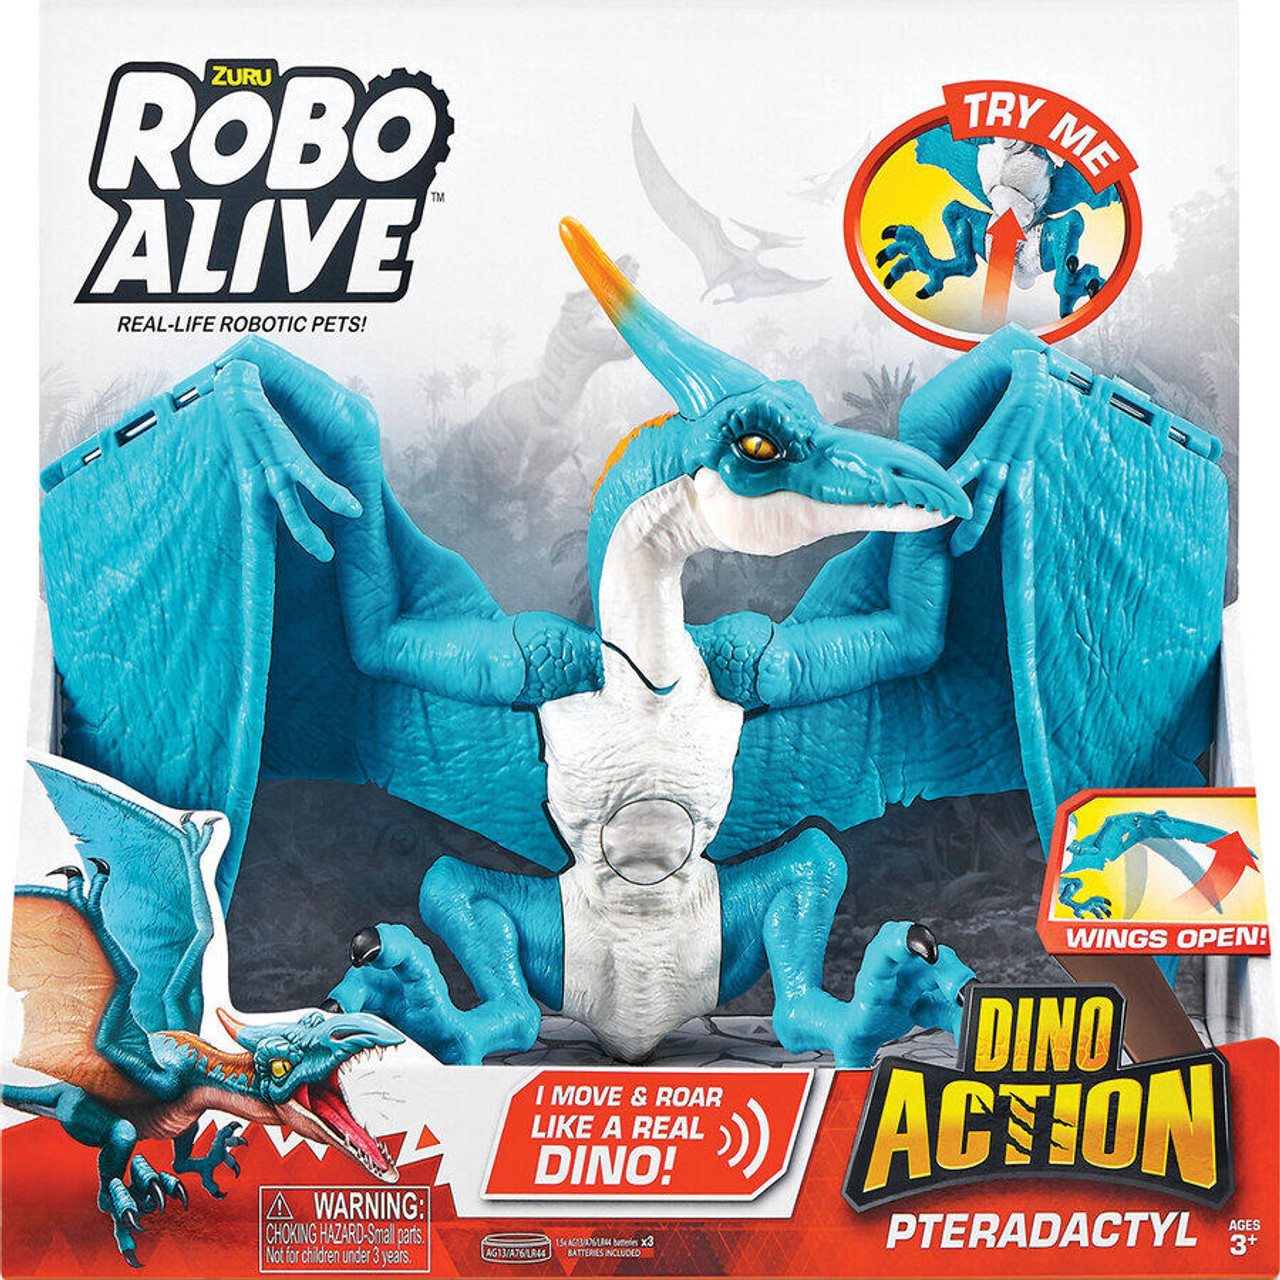 ZURU ROBO ALIVE DINO ACTION PTERADACTYL - Toys Club